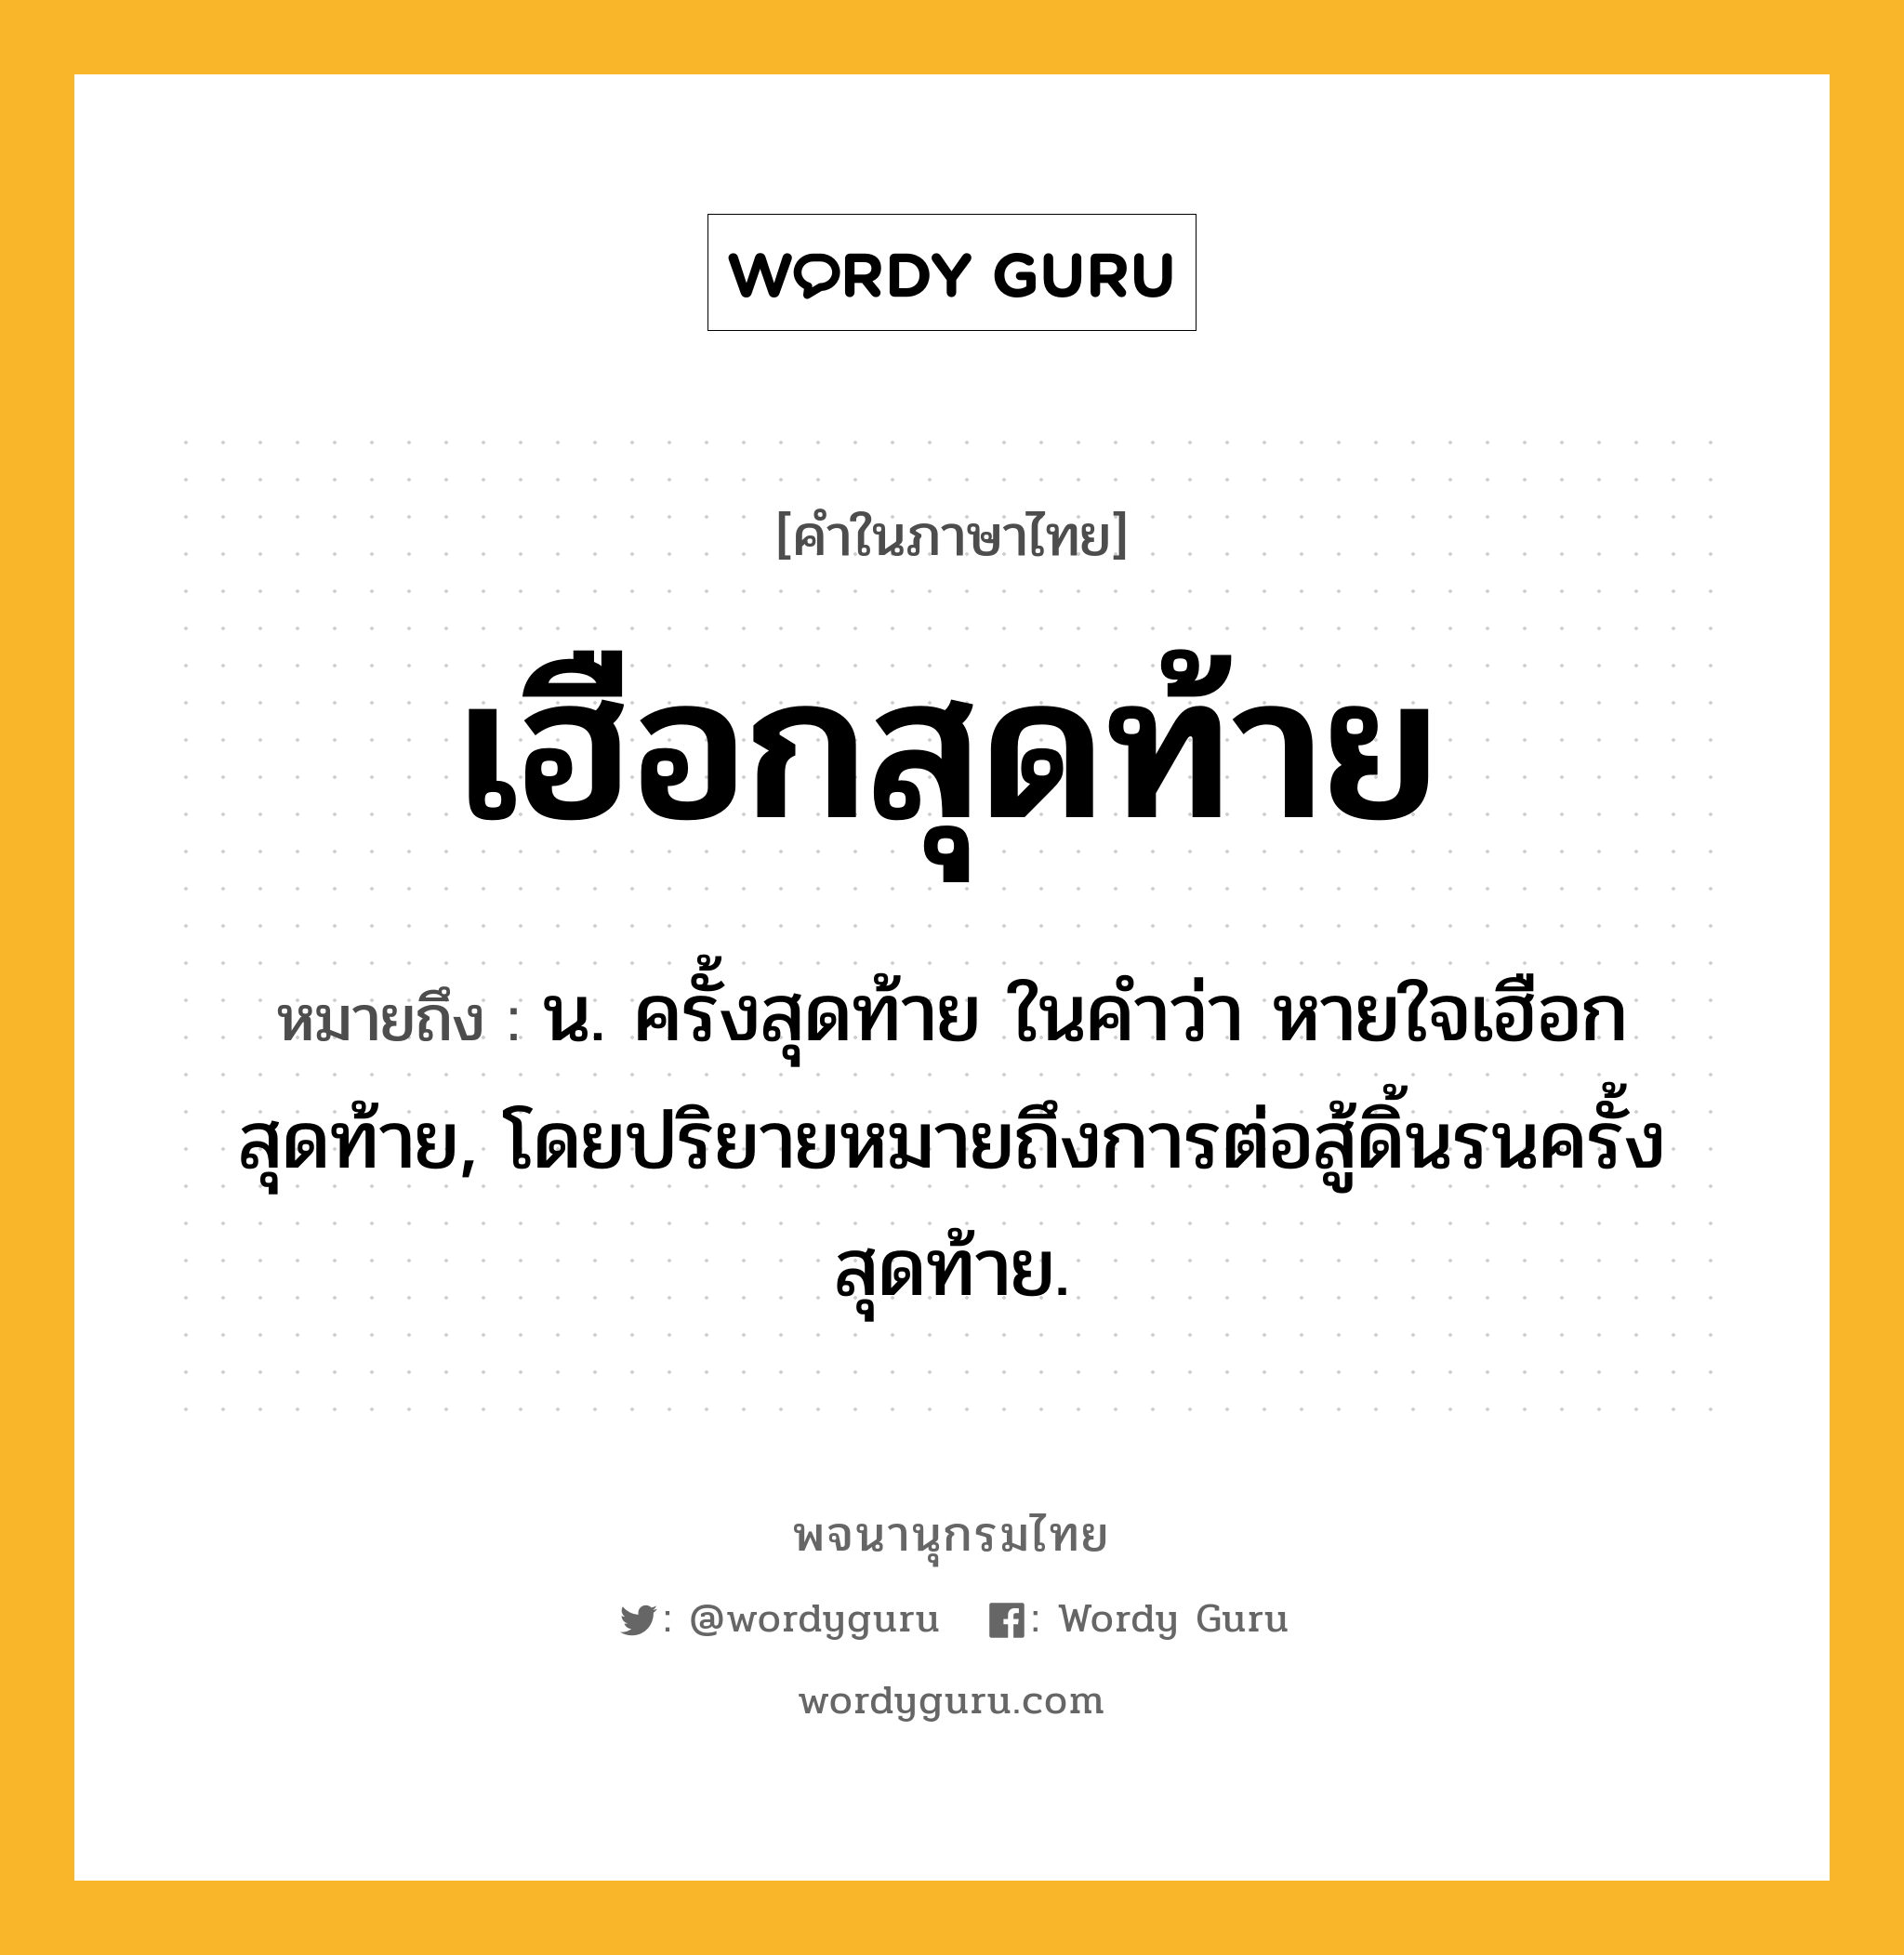 เฮือกสุดท้าย ความหมาย หมายถึงอะไร?, คำในภาษาไทย เฮือกสุดท้าย หมายถึง น. ครั้งสุดท้าย ในคําว่า หายใจเฮือกสุดท้าย, โดยปริยายหมายถึงการต่อสู้ดิ้นรนครั้งสุดท้าย.